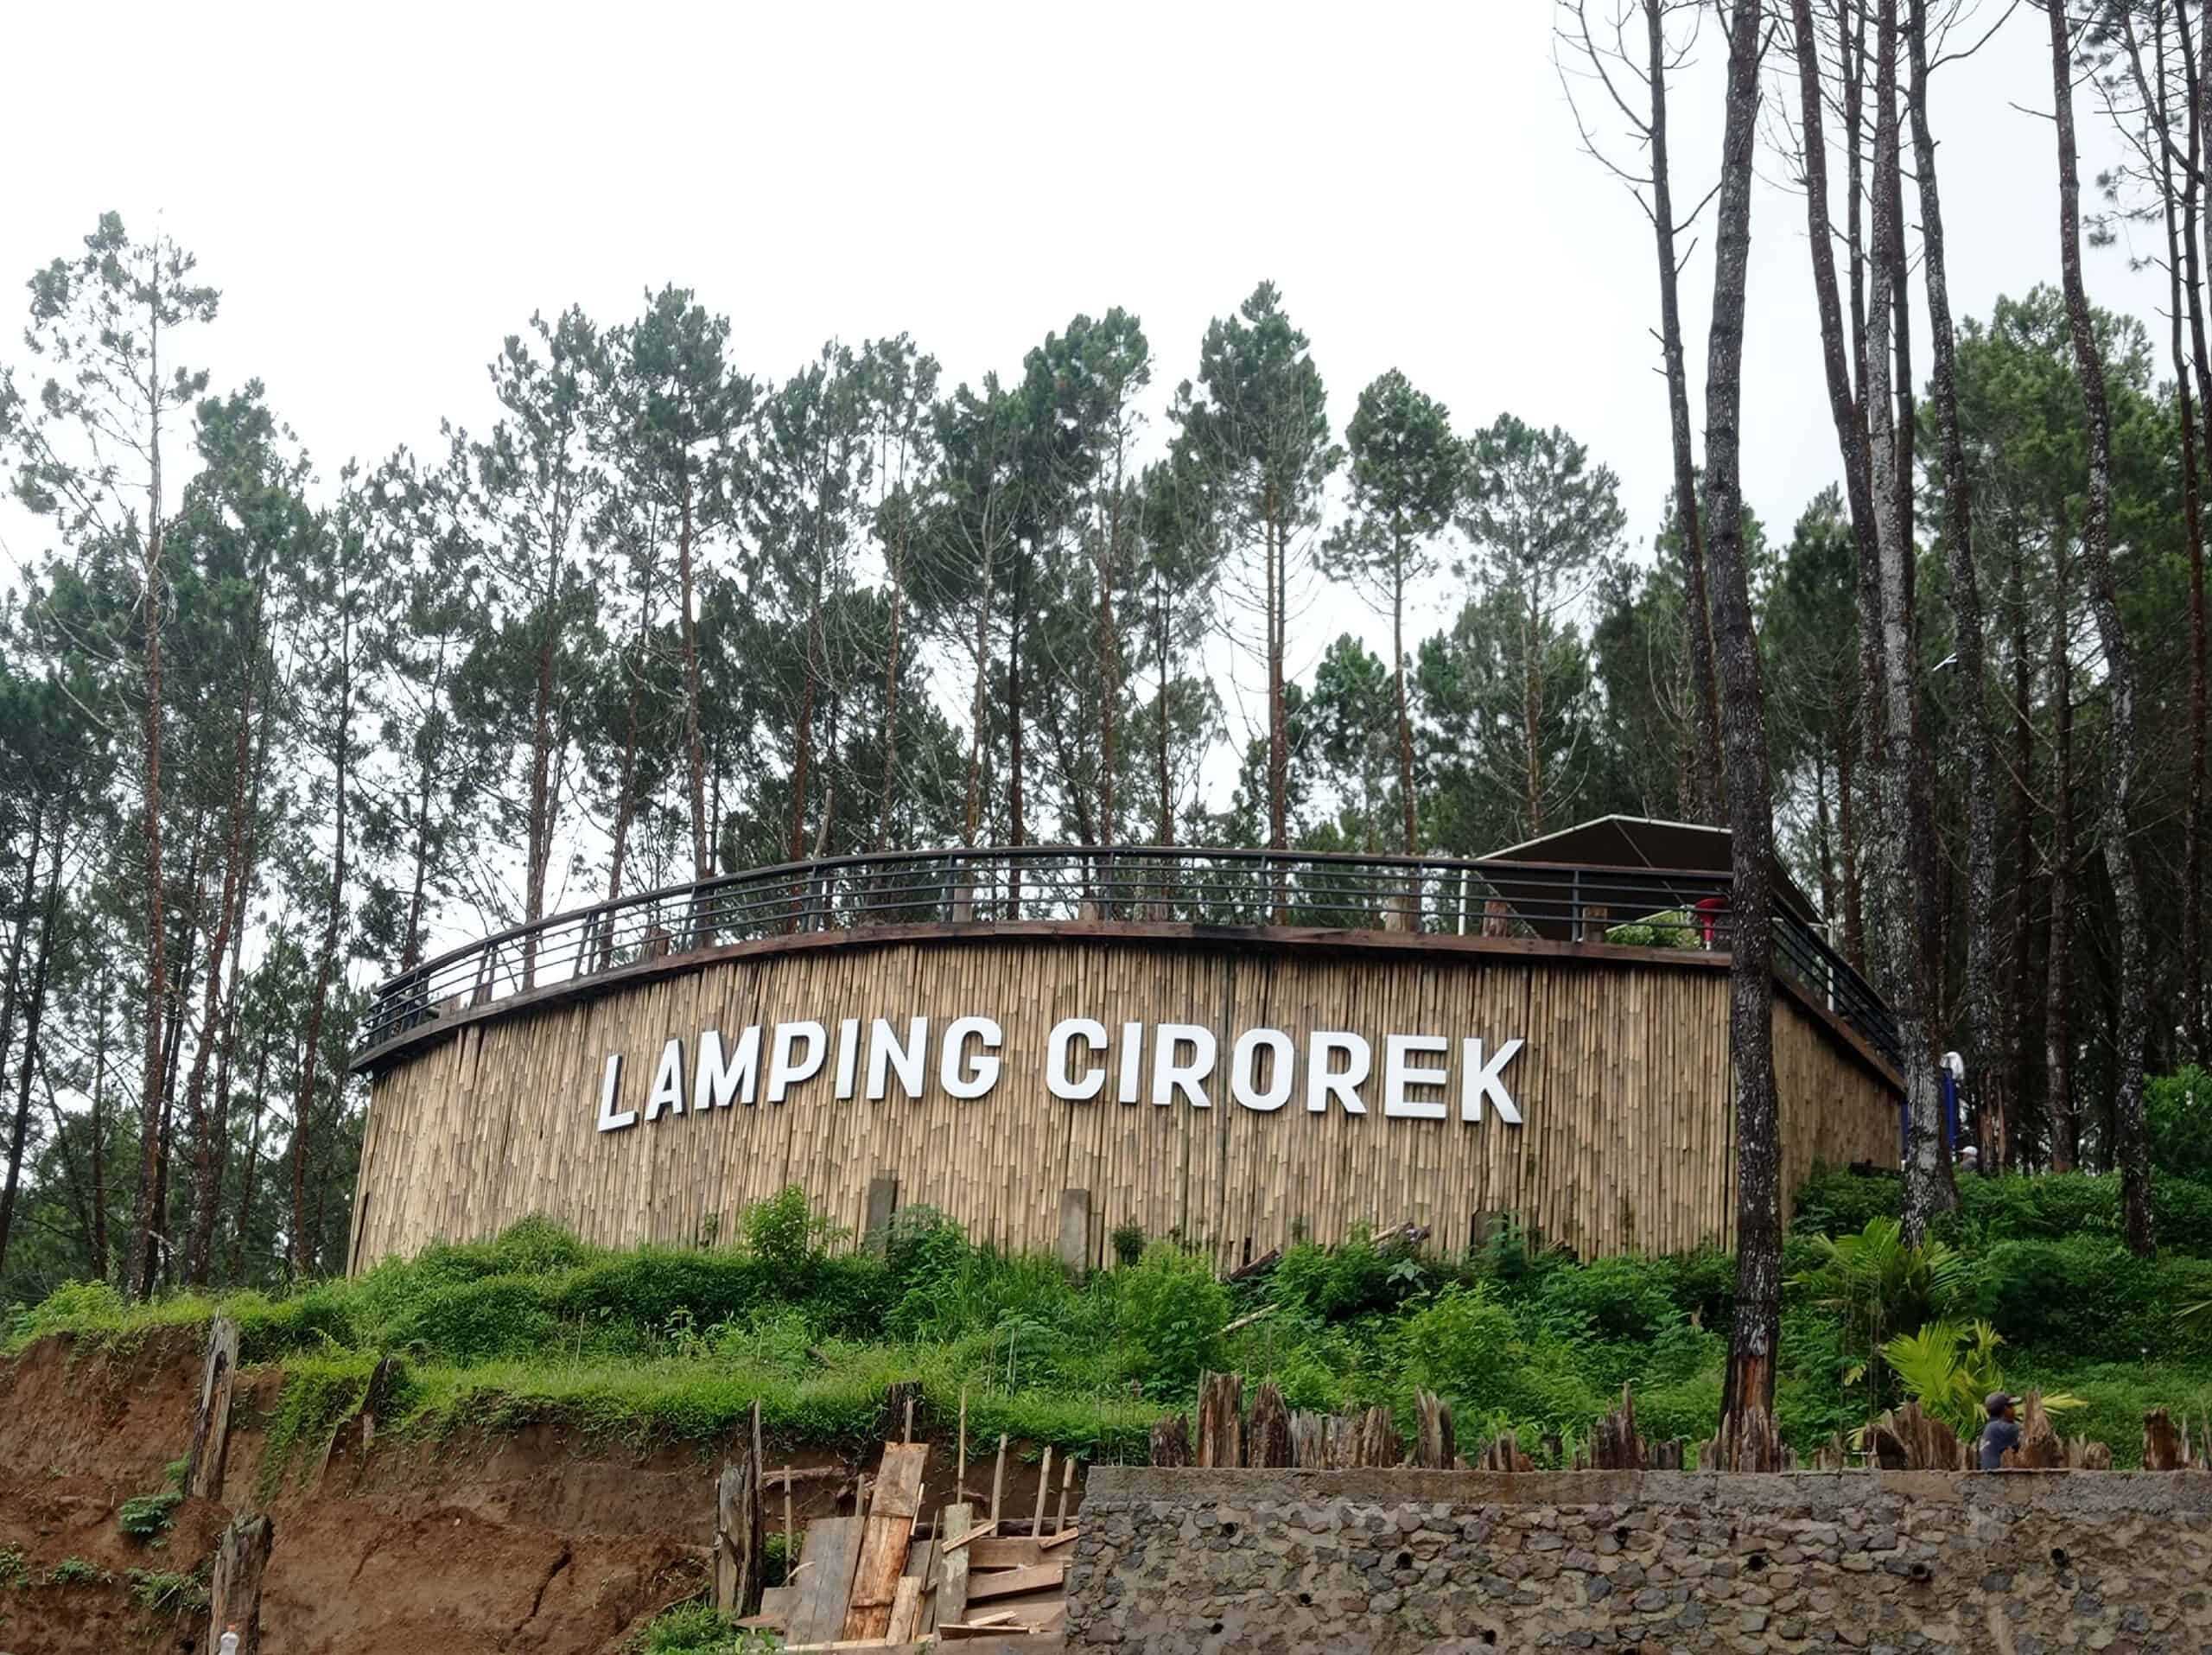 Lamping Cirorek, Tempat staycation yang Instagramable di Garut